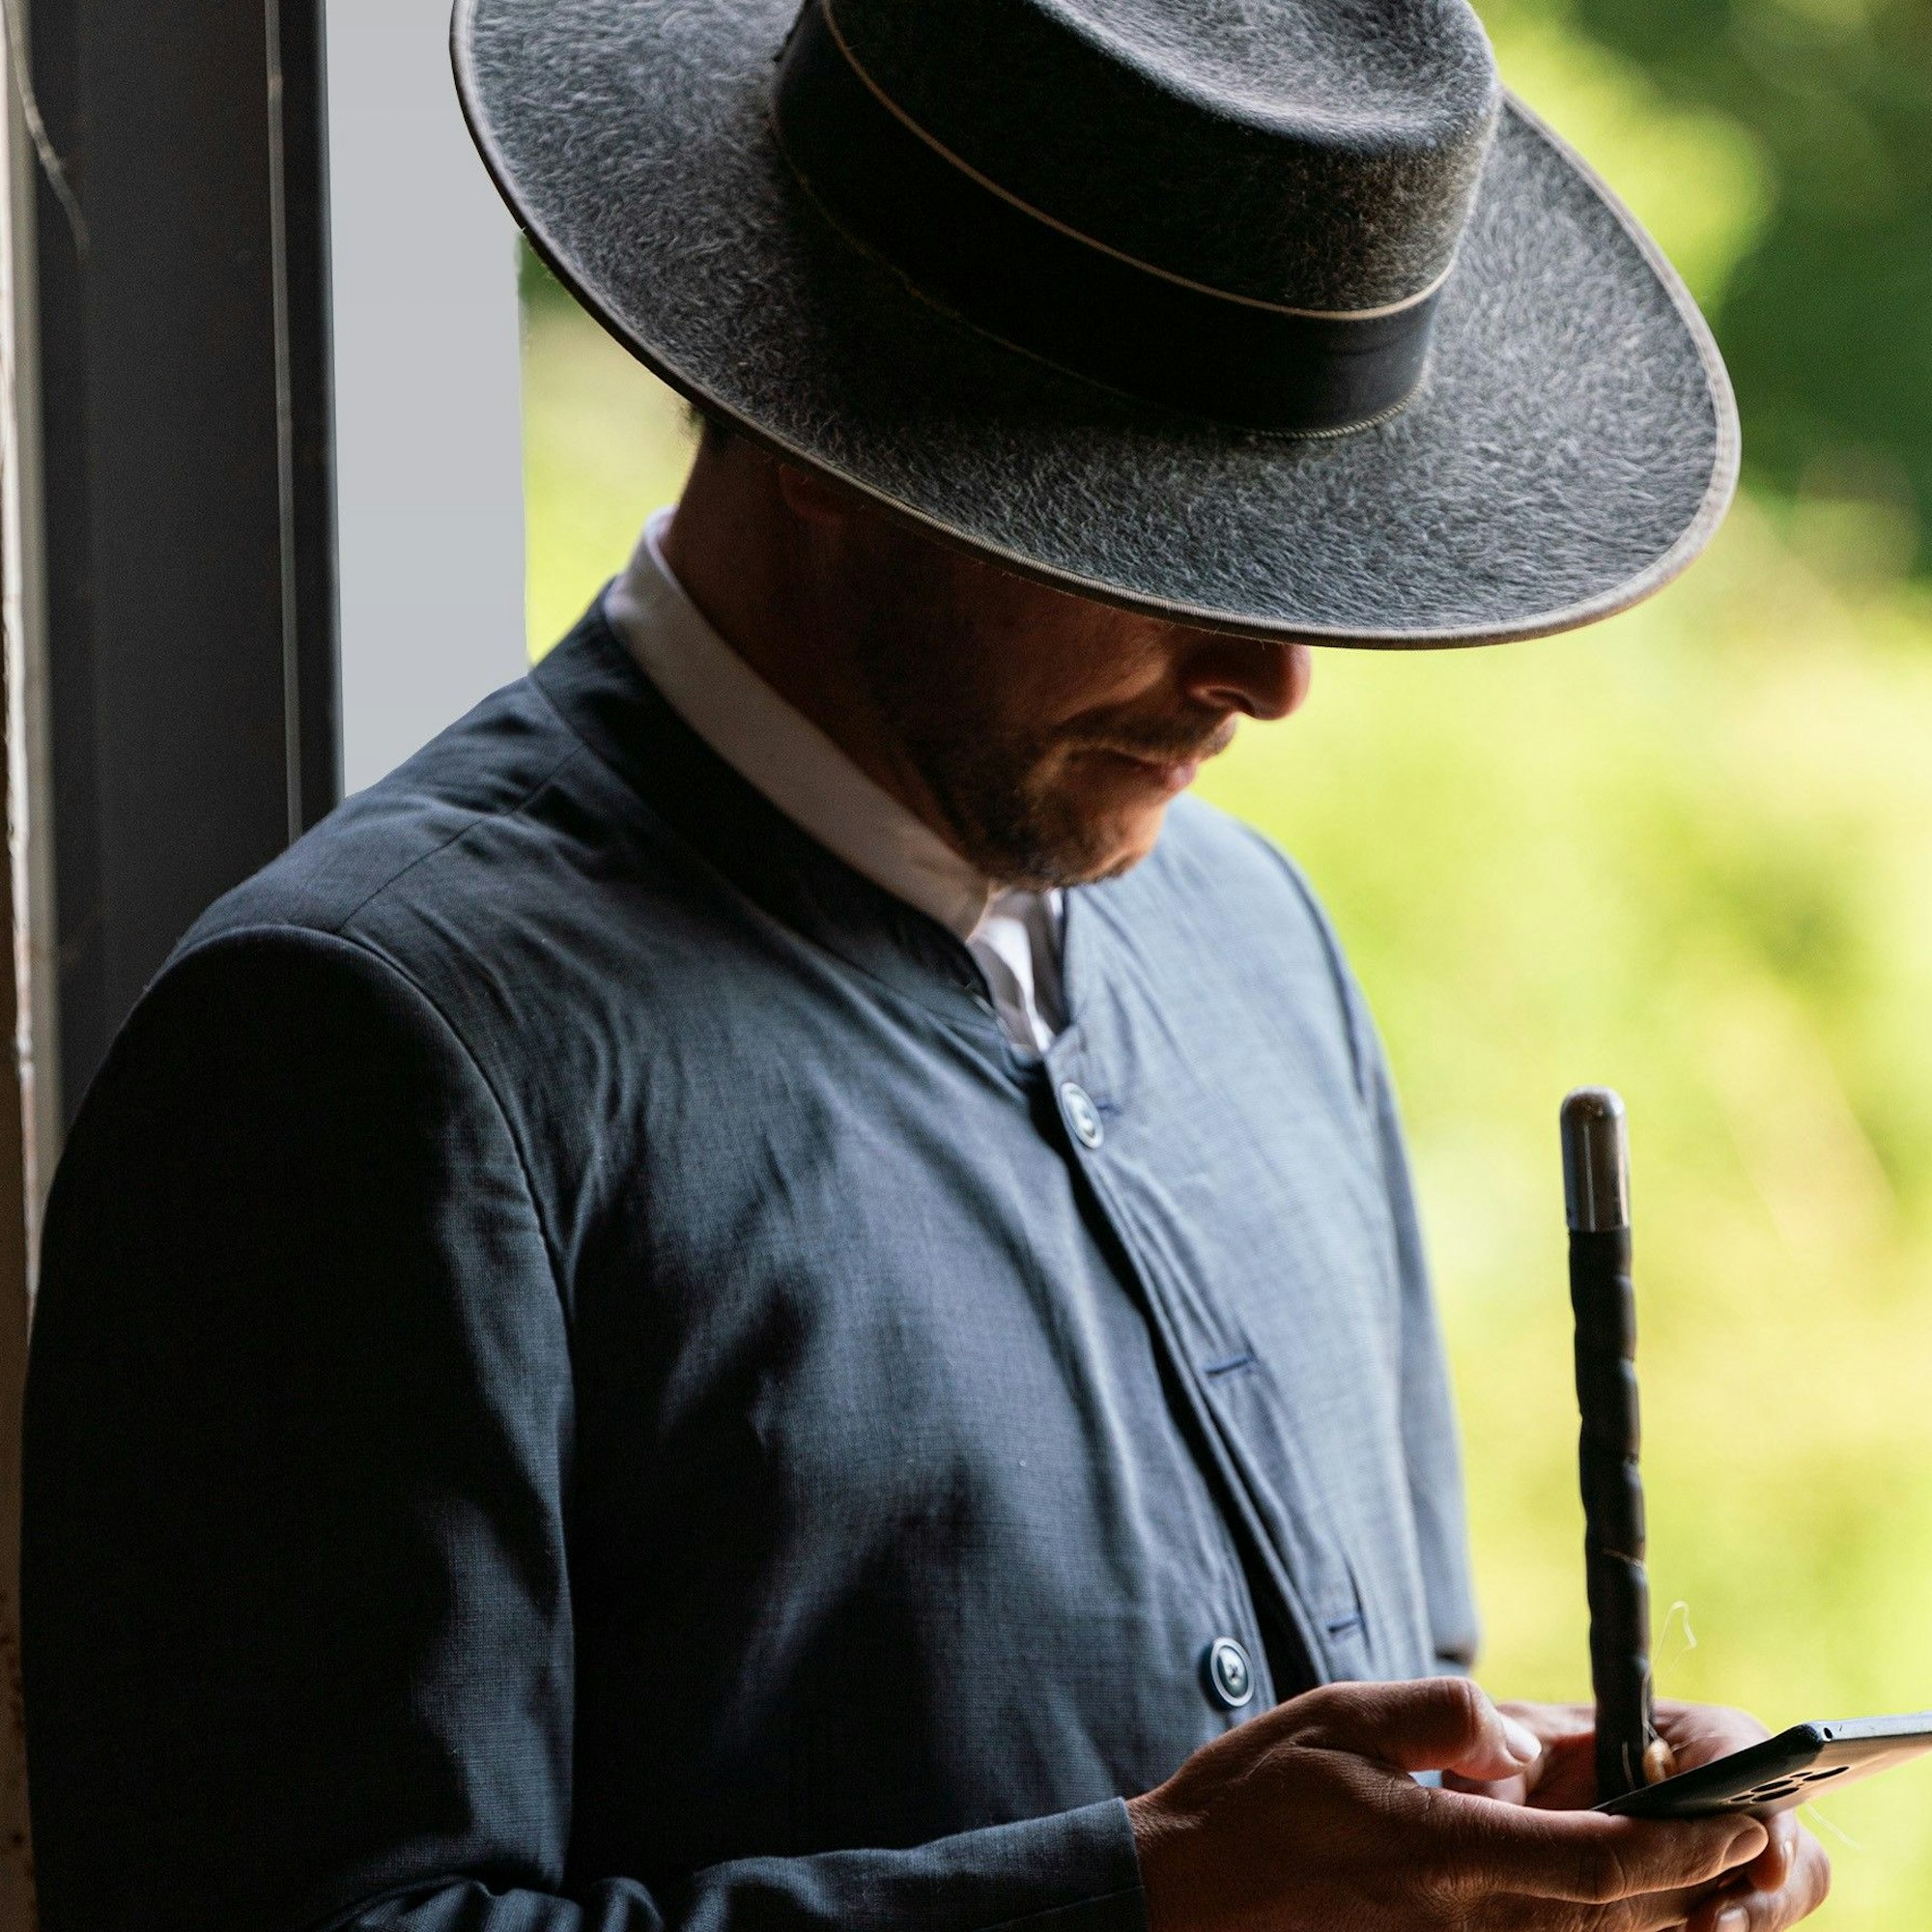 Ein Mann in der traditionellen Kleidung eines Bereiters schaut im Rahmen einer Pferdeschau in Spanien auf sein Smartphone.